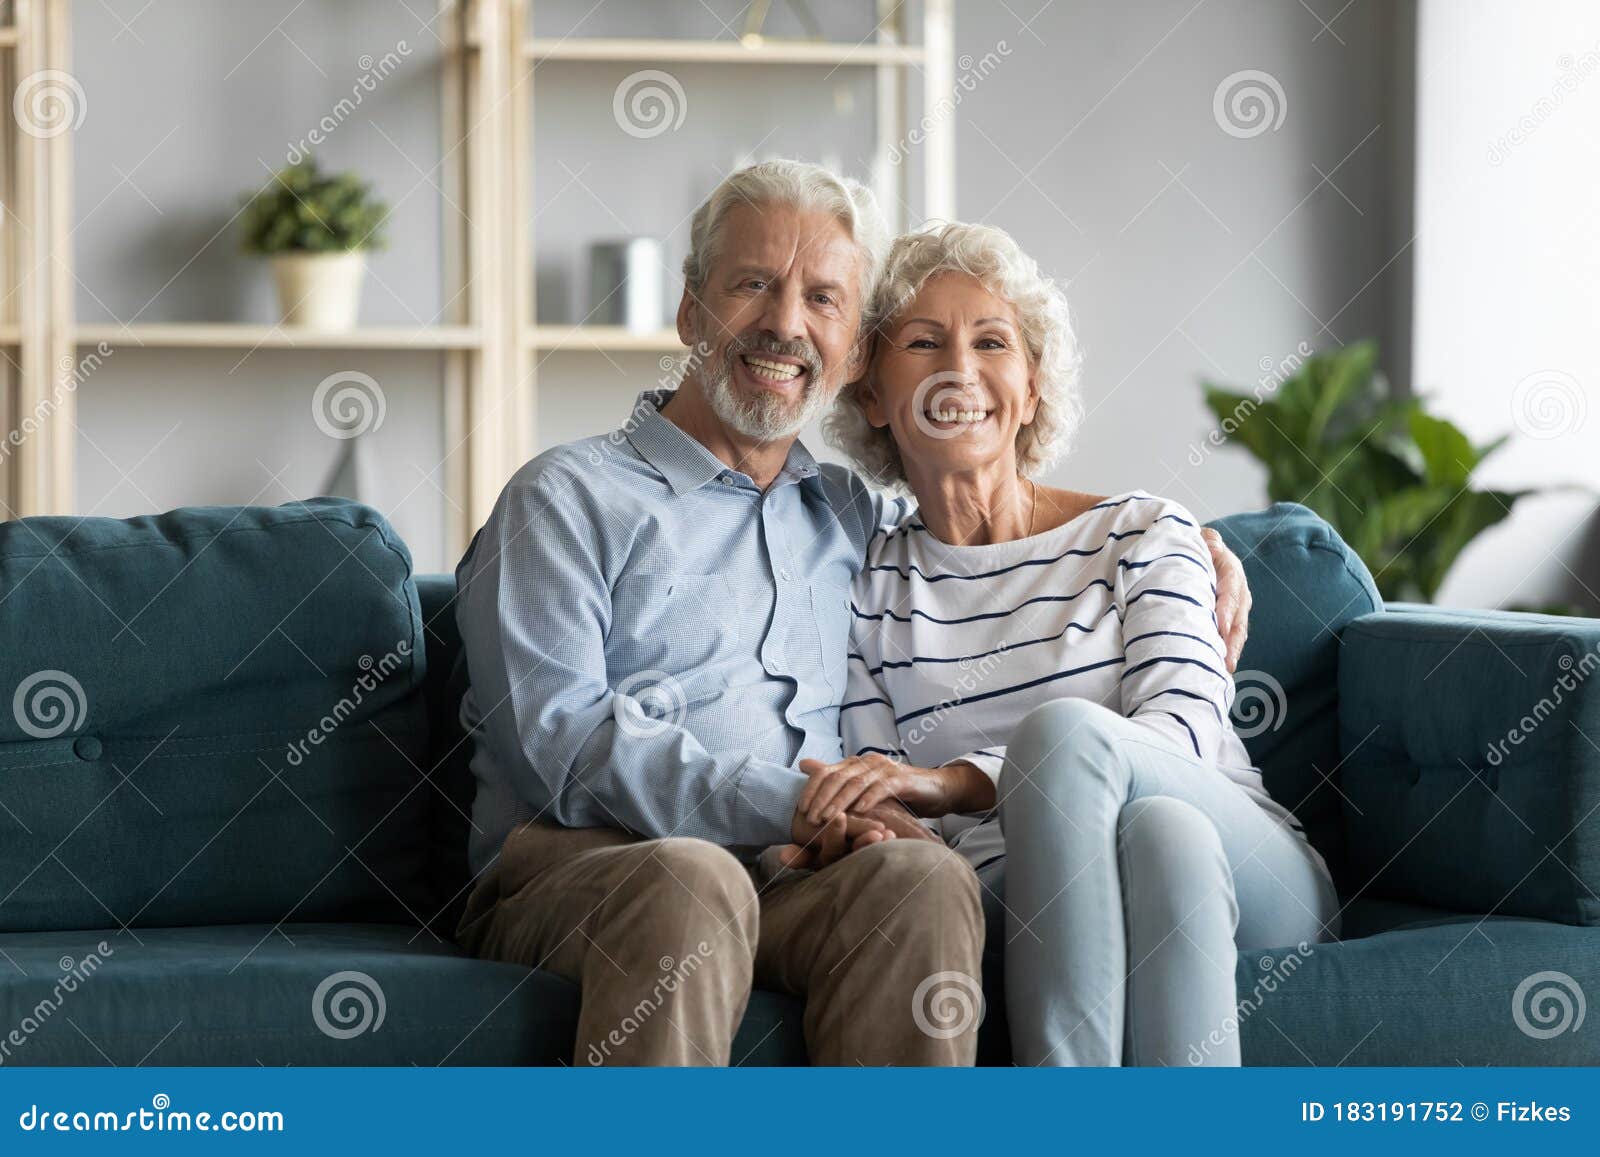 健康中年夫妇照相库存照片 图片包括有健康中年夫妇照相